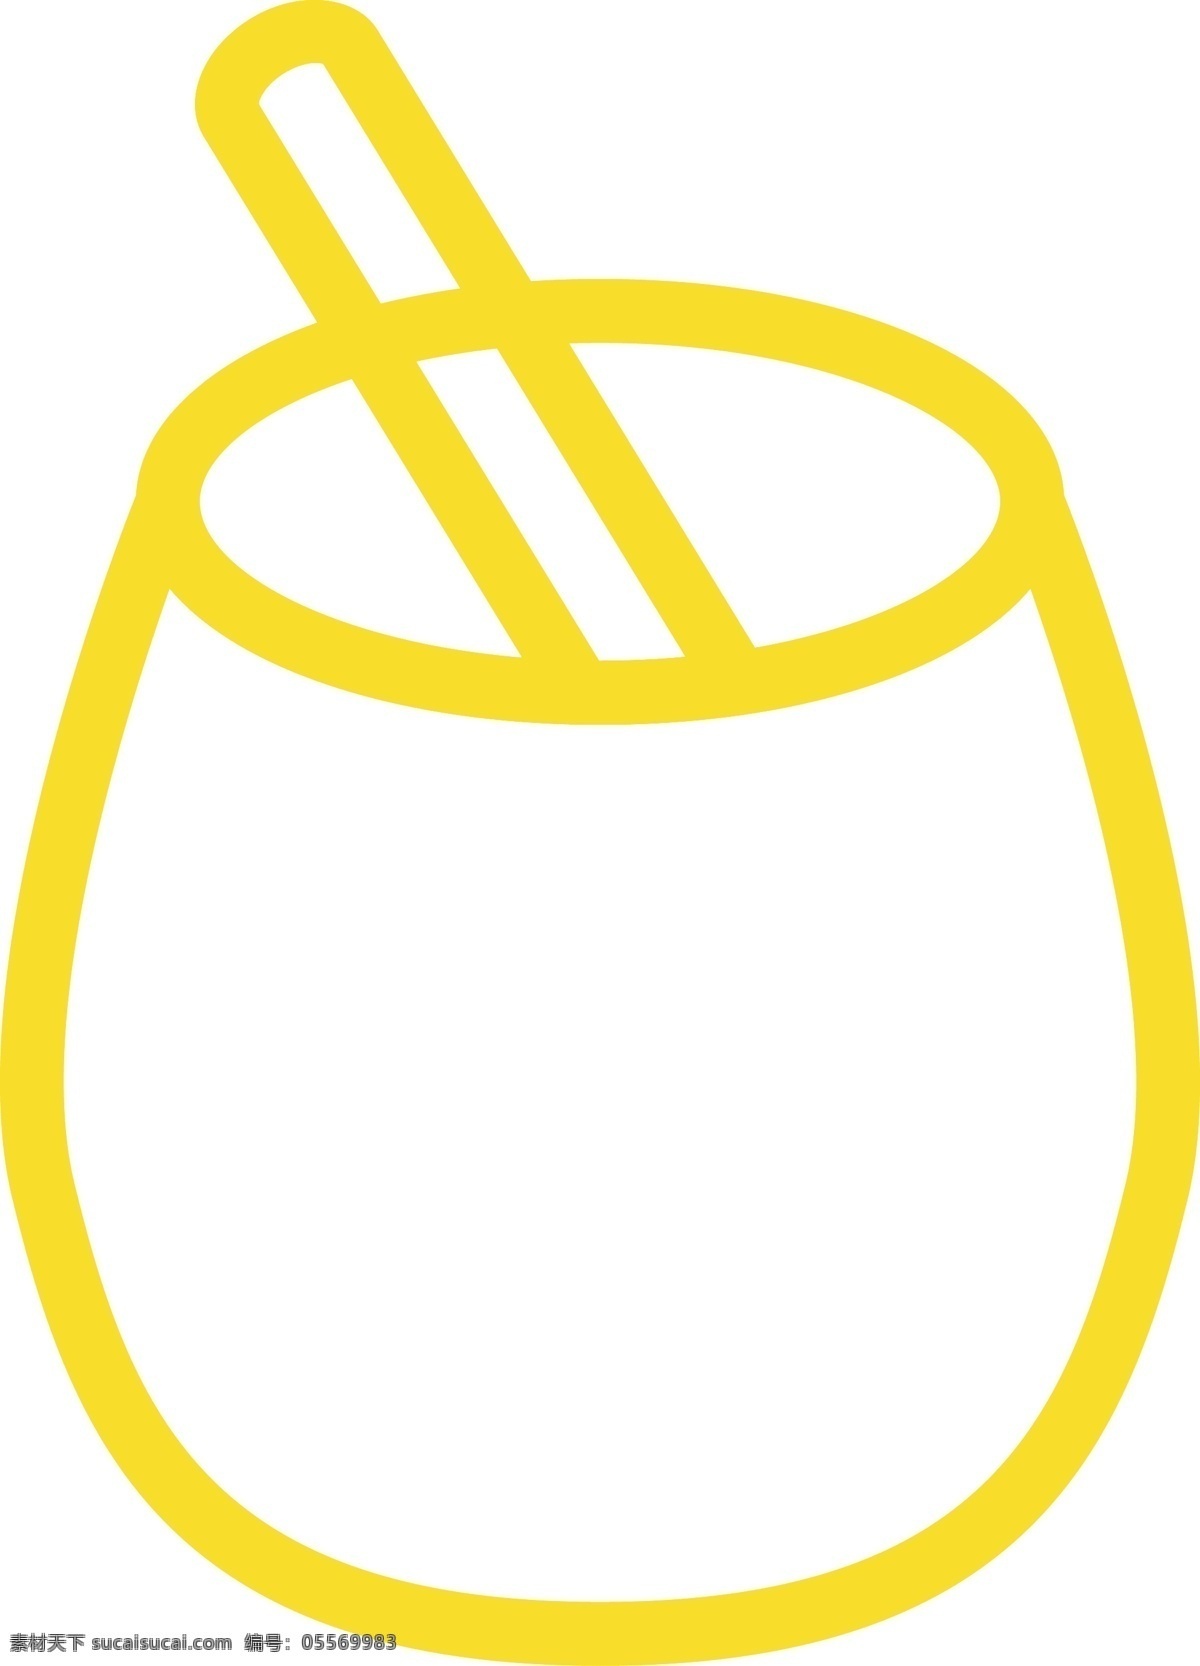 卡通 饮料 杯子 免 抠 图 黄色杯子 ui应用图标 网页图标 电脑图标 卡通图案 卡通插画 生活杯子 免抠图